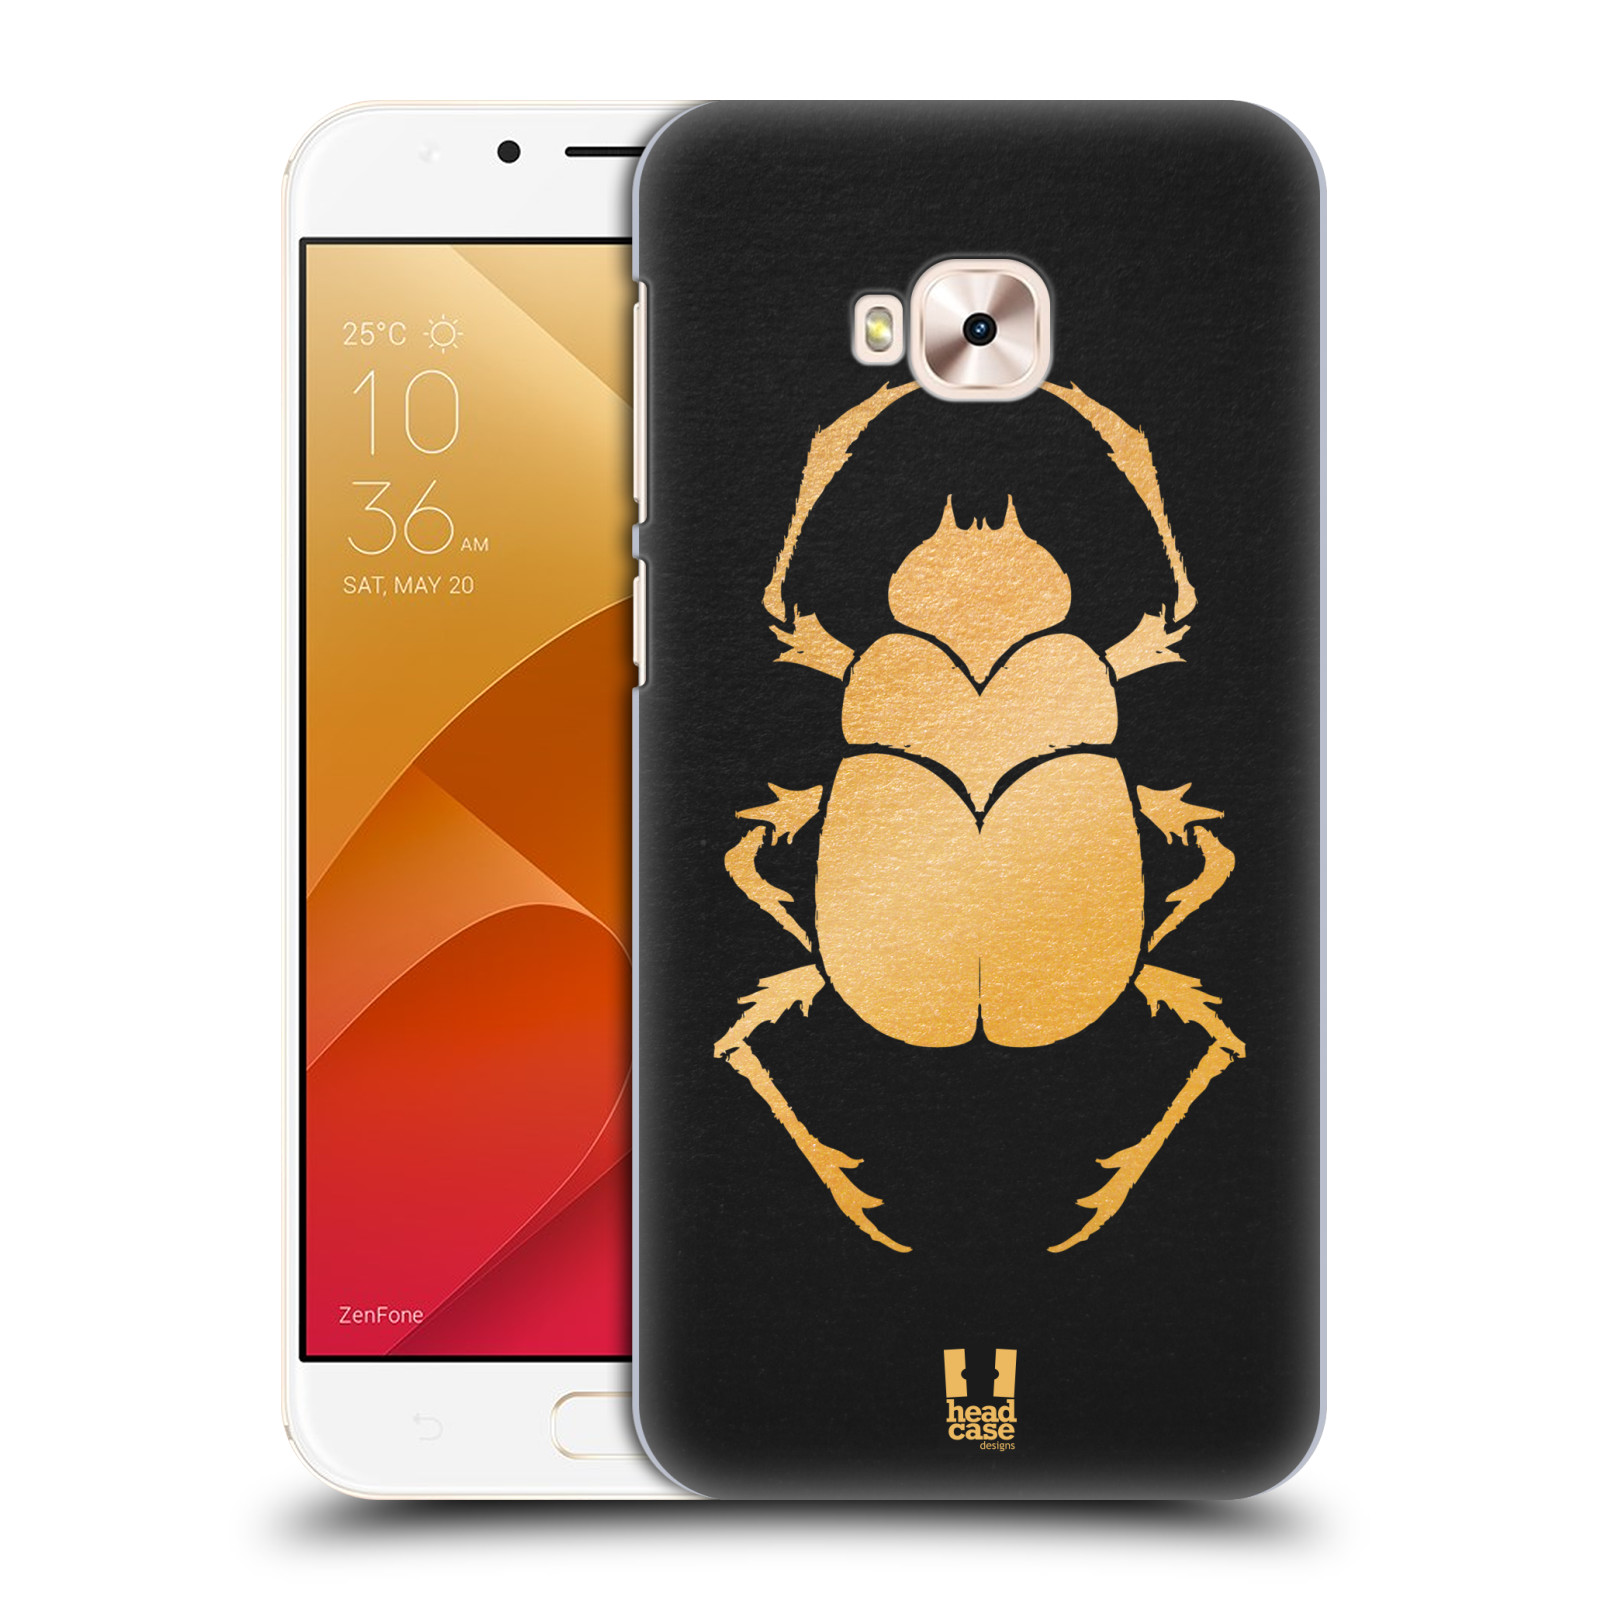 HEAD CASE plastový obal na mobil Asus Zenfone 4 Selfie Pro ZD552KL vzor EGYPT zlatá a černá BROUK SKARAB